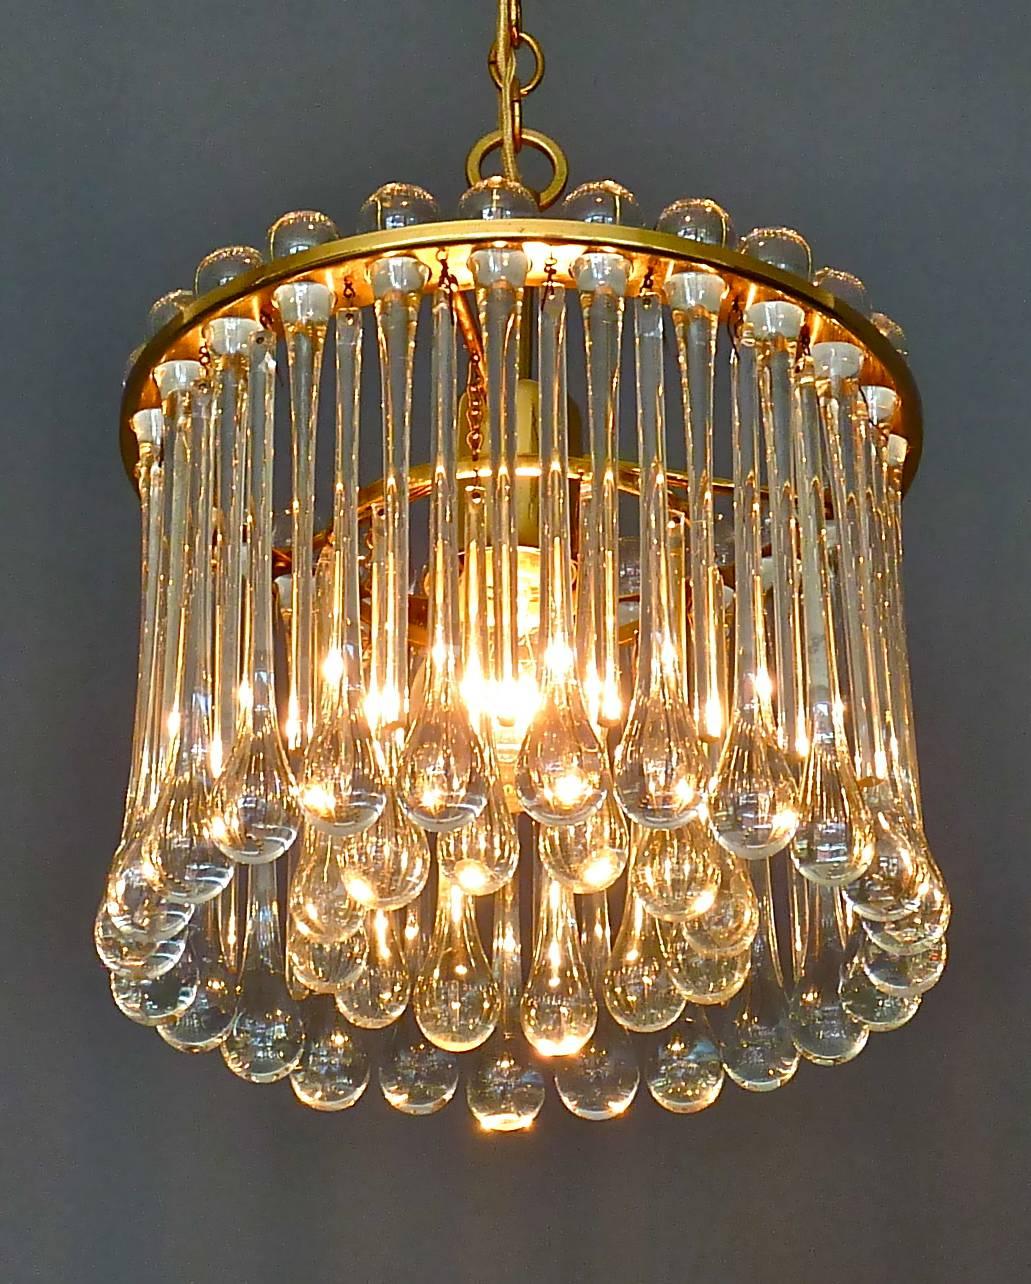 Kronleuchter aus vergoldetem Messing und Kristallglas, hergestellt von Palwa, Deutschland, ca. 1960-1970. Der an einer Kette hängende und in der Länge verstellbare Kronleuchter besteht aus vergoldetem Messing mit vielen länglichen